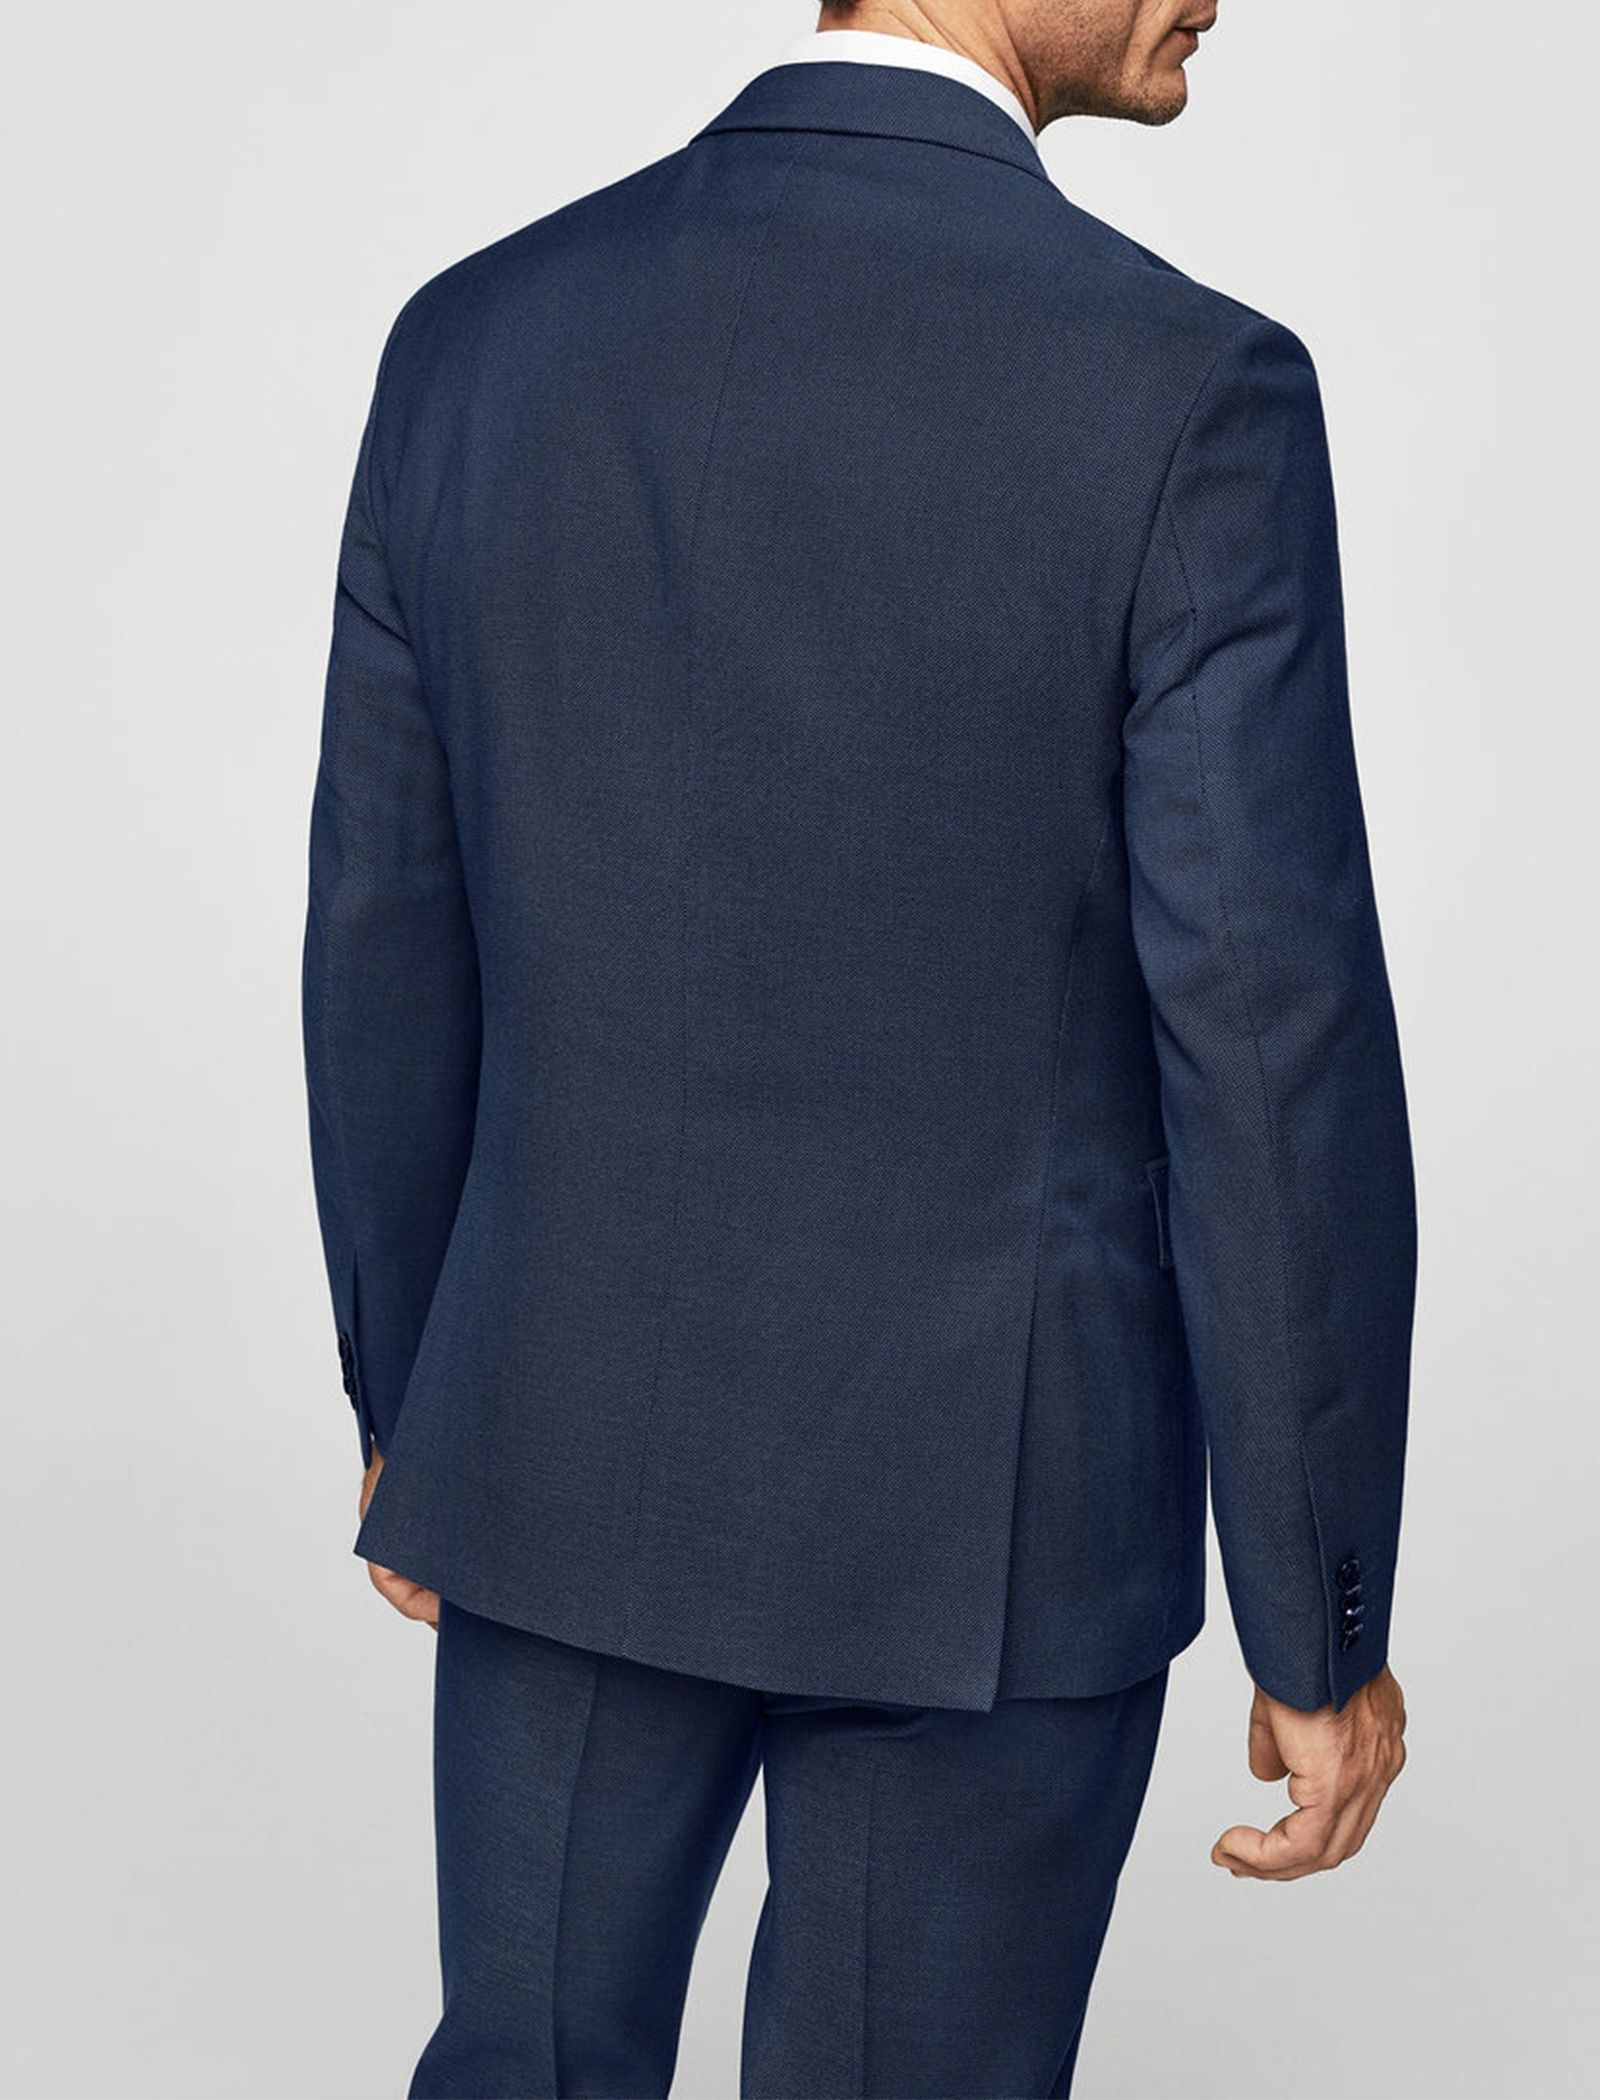 کت تک رسمی مردانه - مانگو - سرمه اي - 4